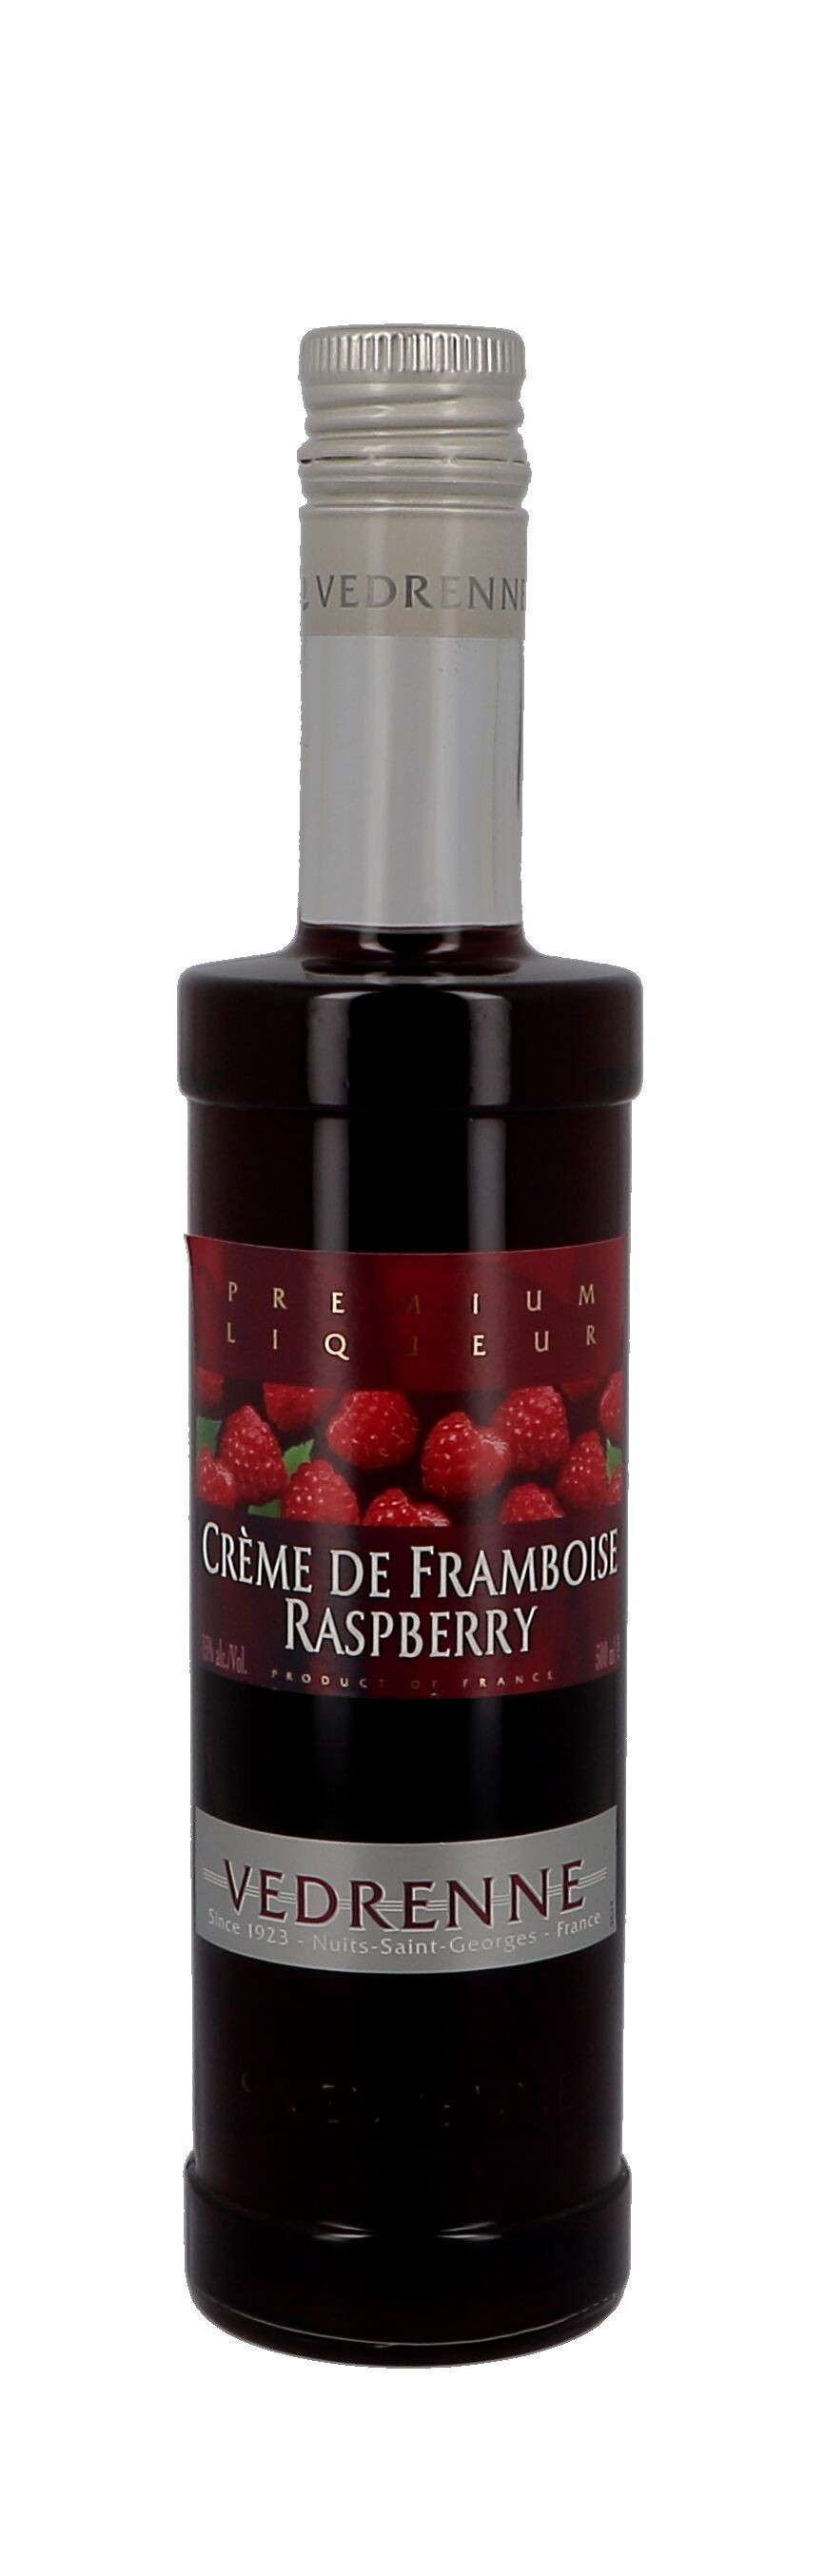 Vedrenne Creme de Framboise 50cl 15% Raspberry Liqueur